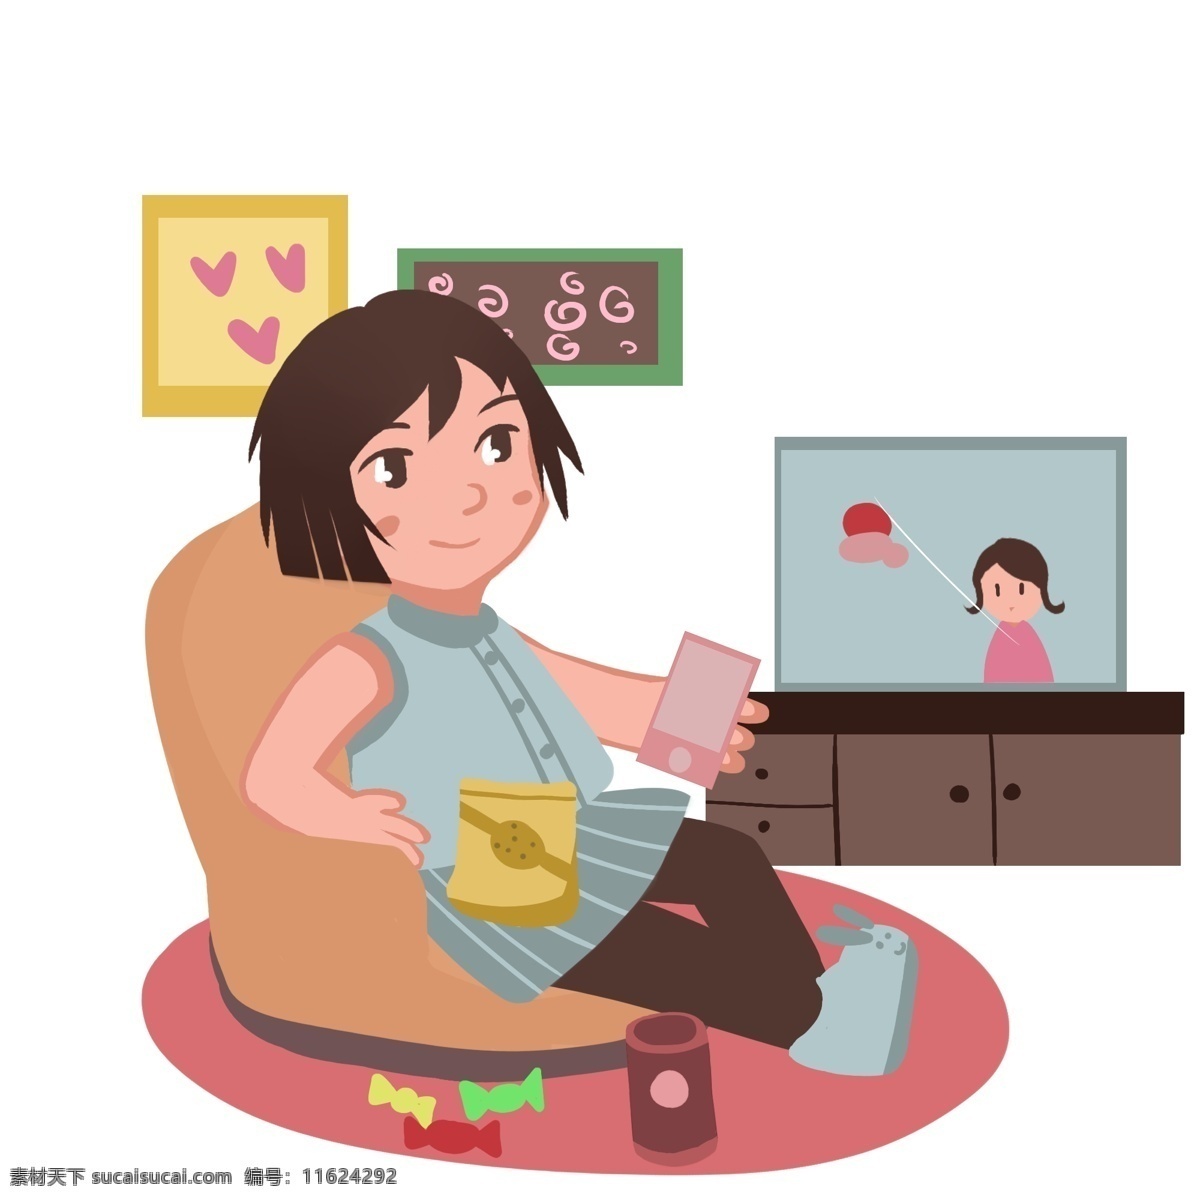 宅 家 看 电视 小女孩 红色的桃心 红色的手机 黄色的沙发 彩色的糖果 人物 手绘 插画 蓝色的电视